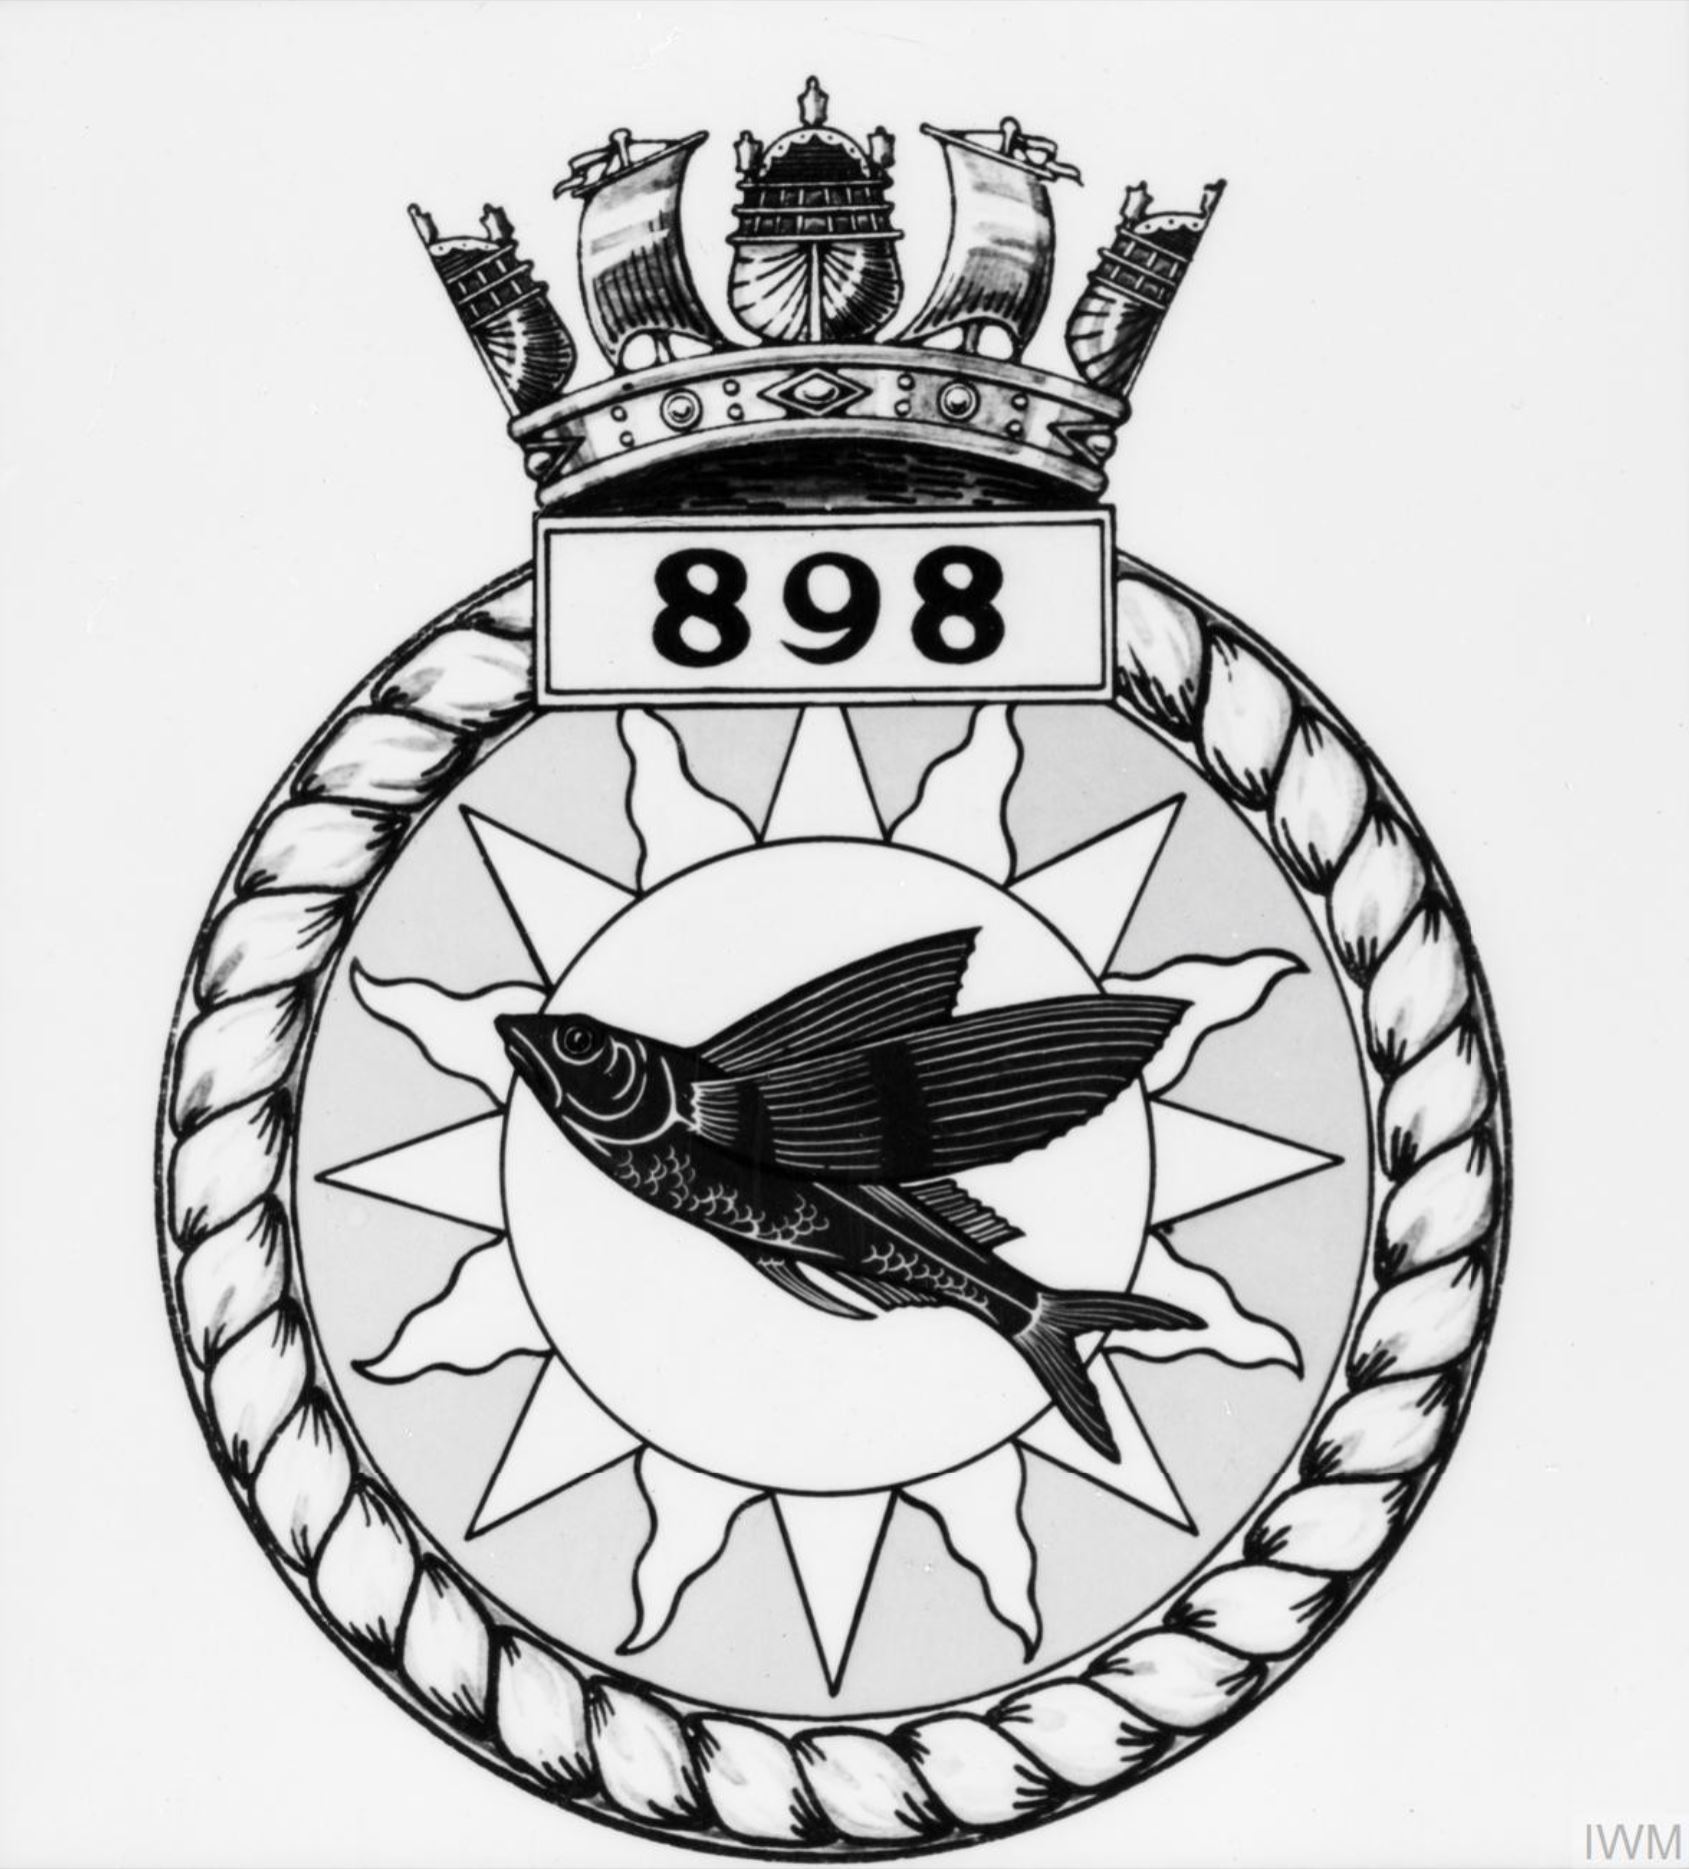 Fleet Air Arm crest of 898 Squadron IWM A26795